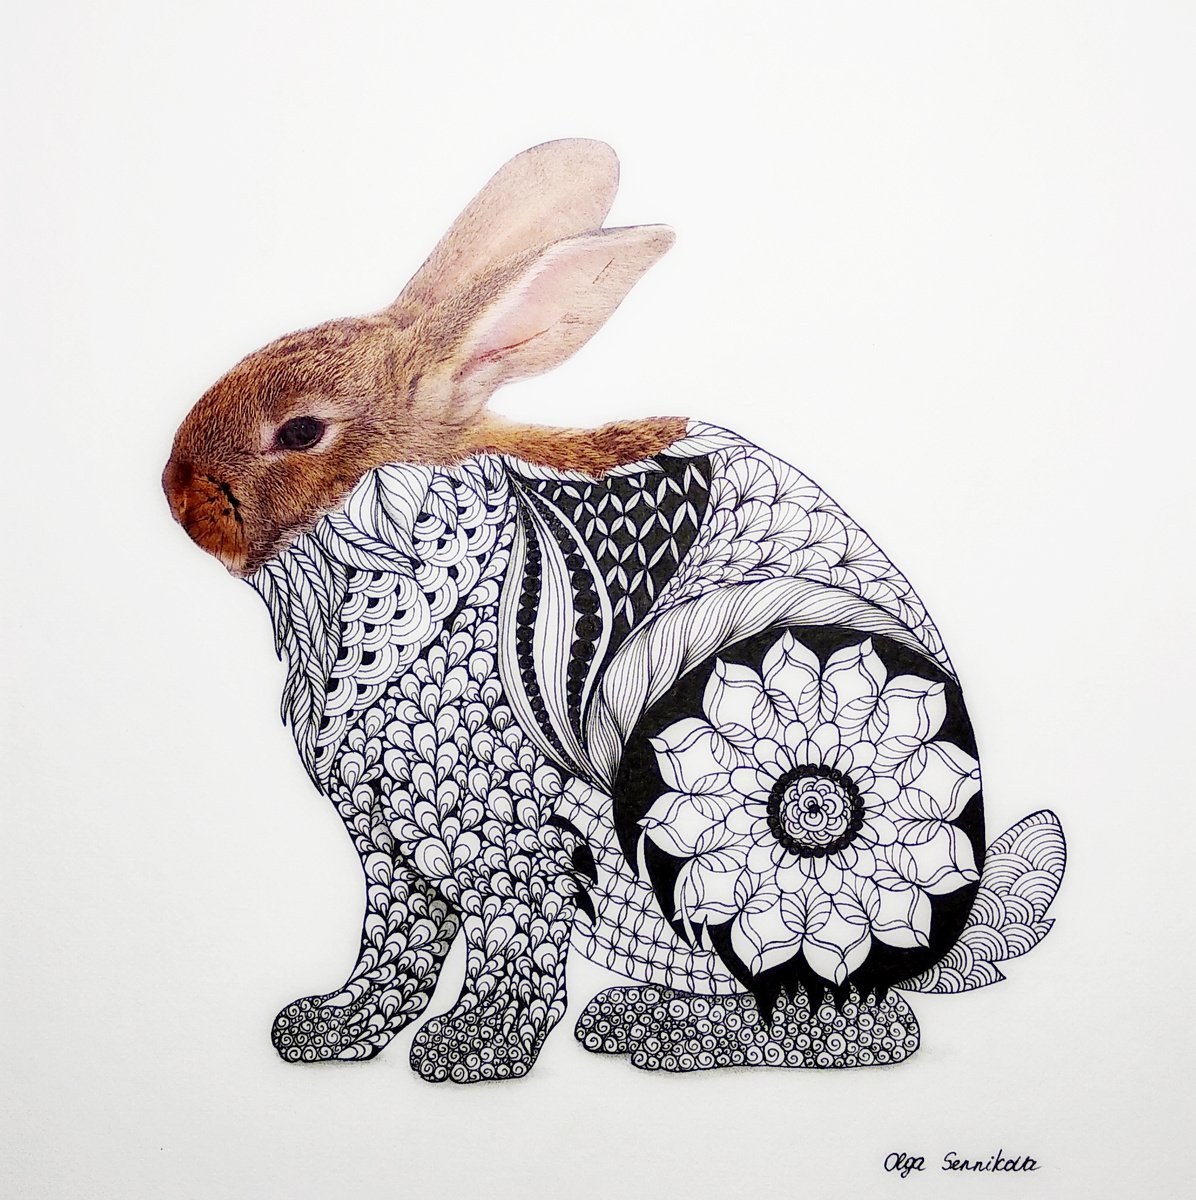 Rabbit by Olga Sennikova